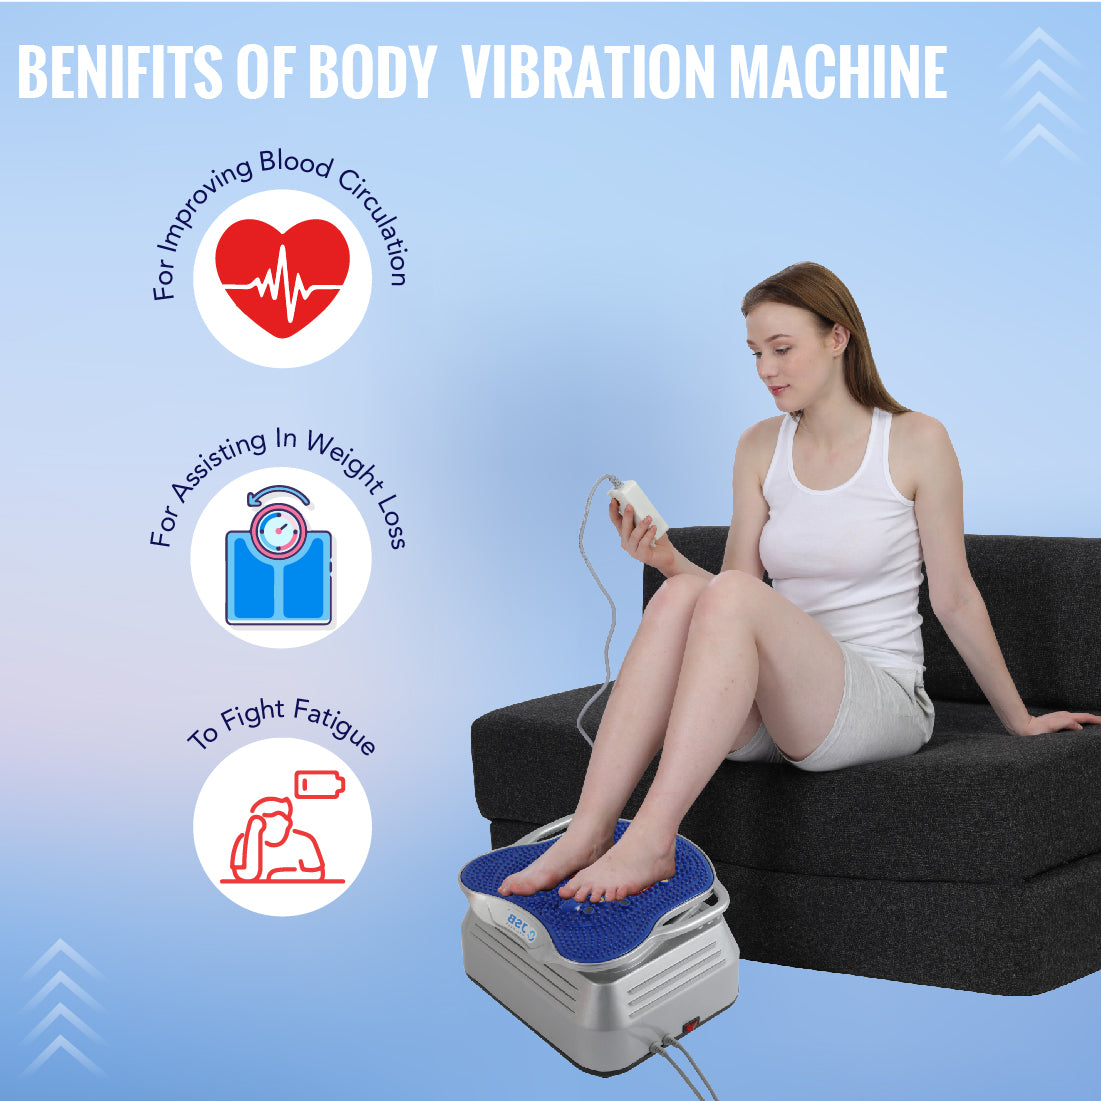 body vibration machine benefits